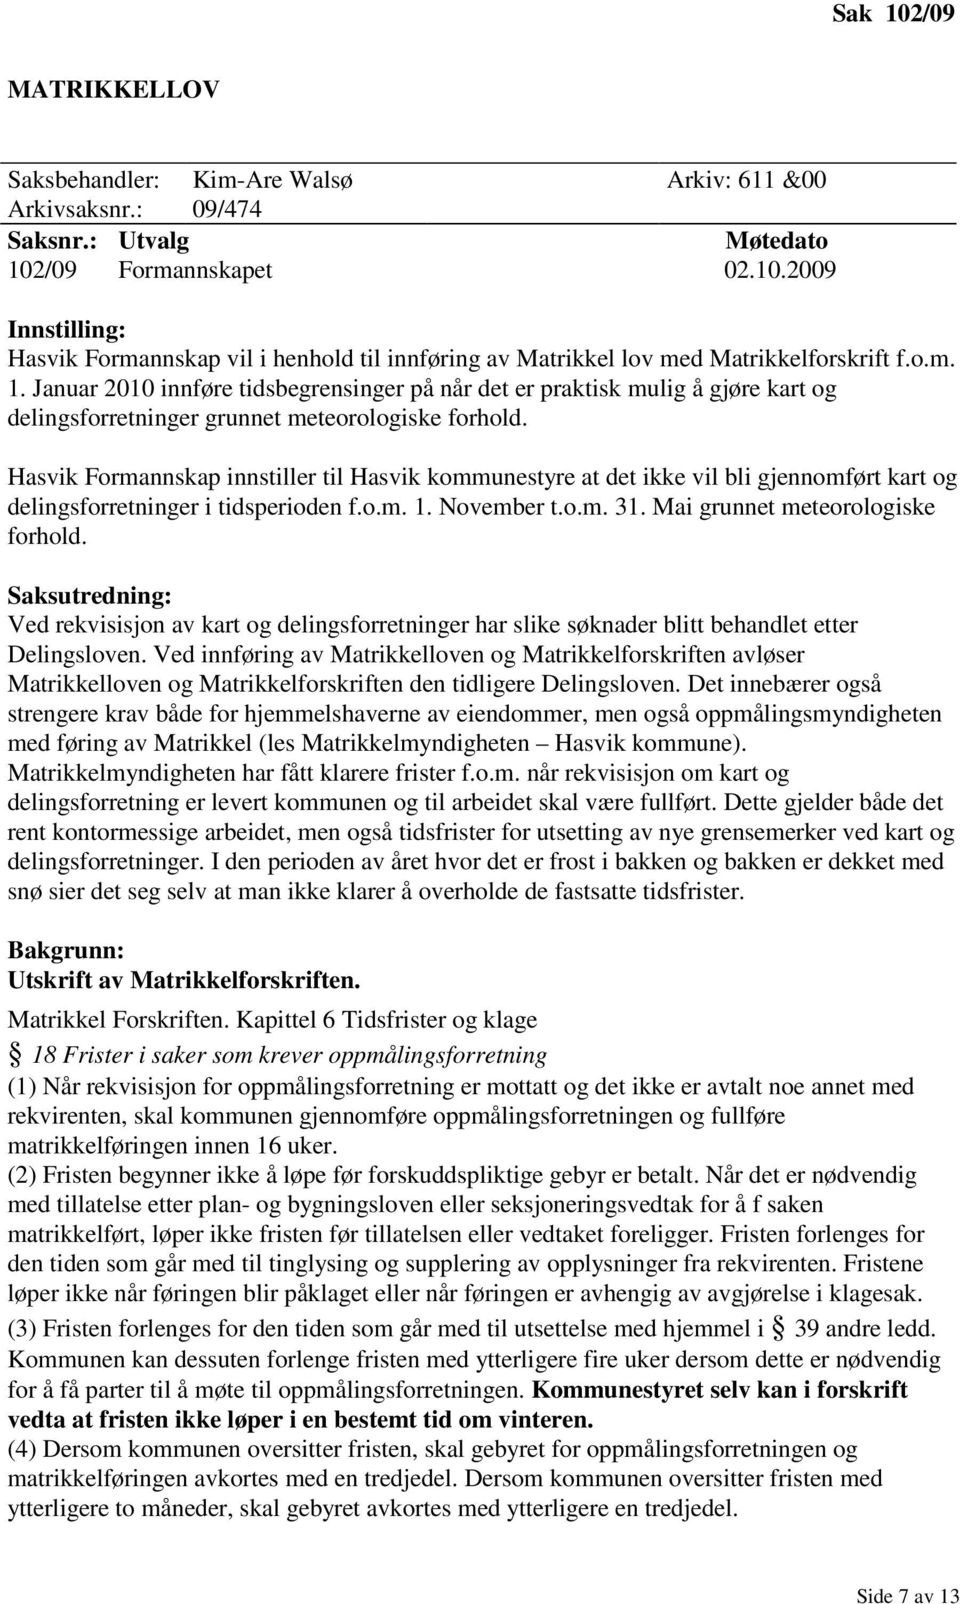 Hasvik Formannskap innstiller til Hasvik kommunestyre at det ikke vil bli gjennomført kart og delingsforretninger i tidsperioden f.o.m. 1. November t.o.m. 31. Mai grunnet meteorologiske forhold.